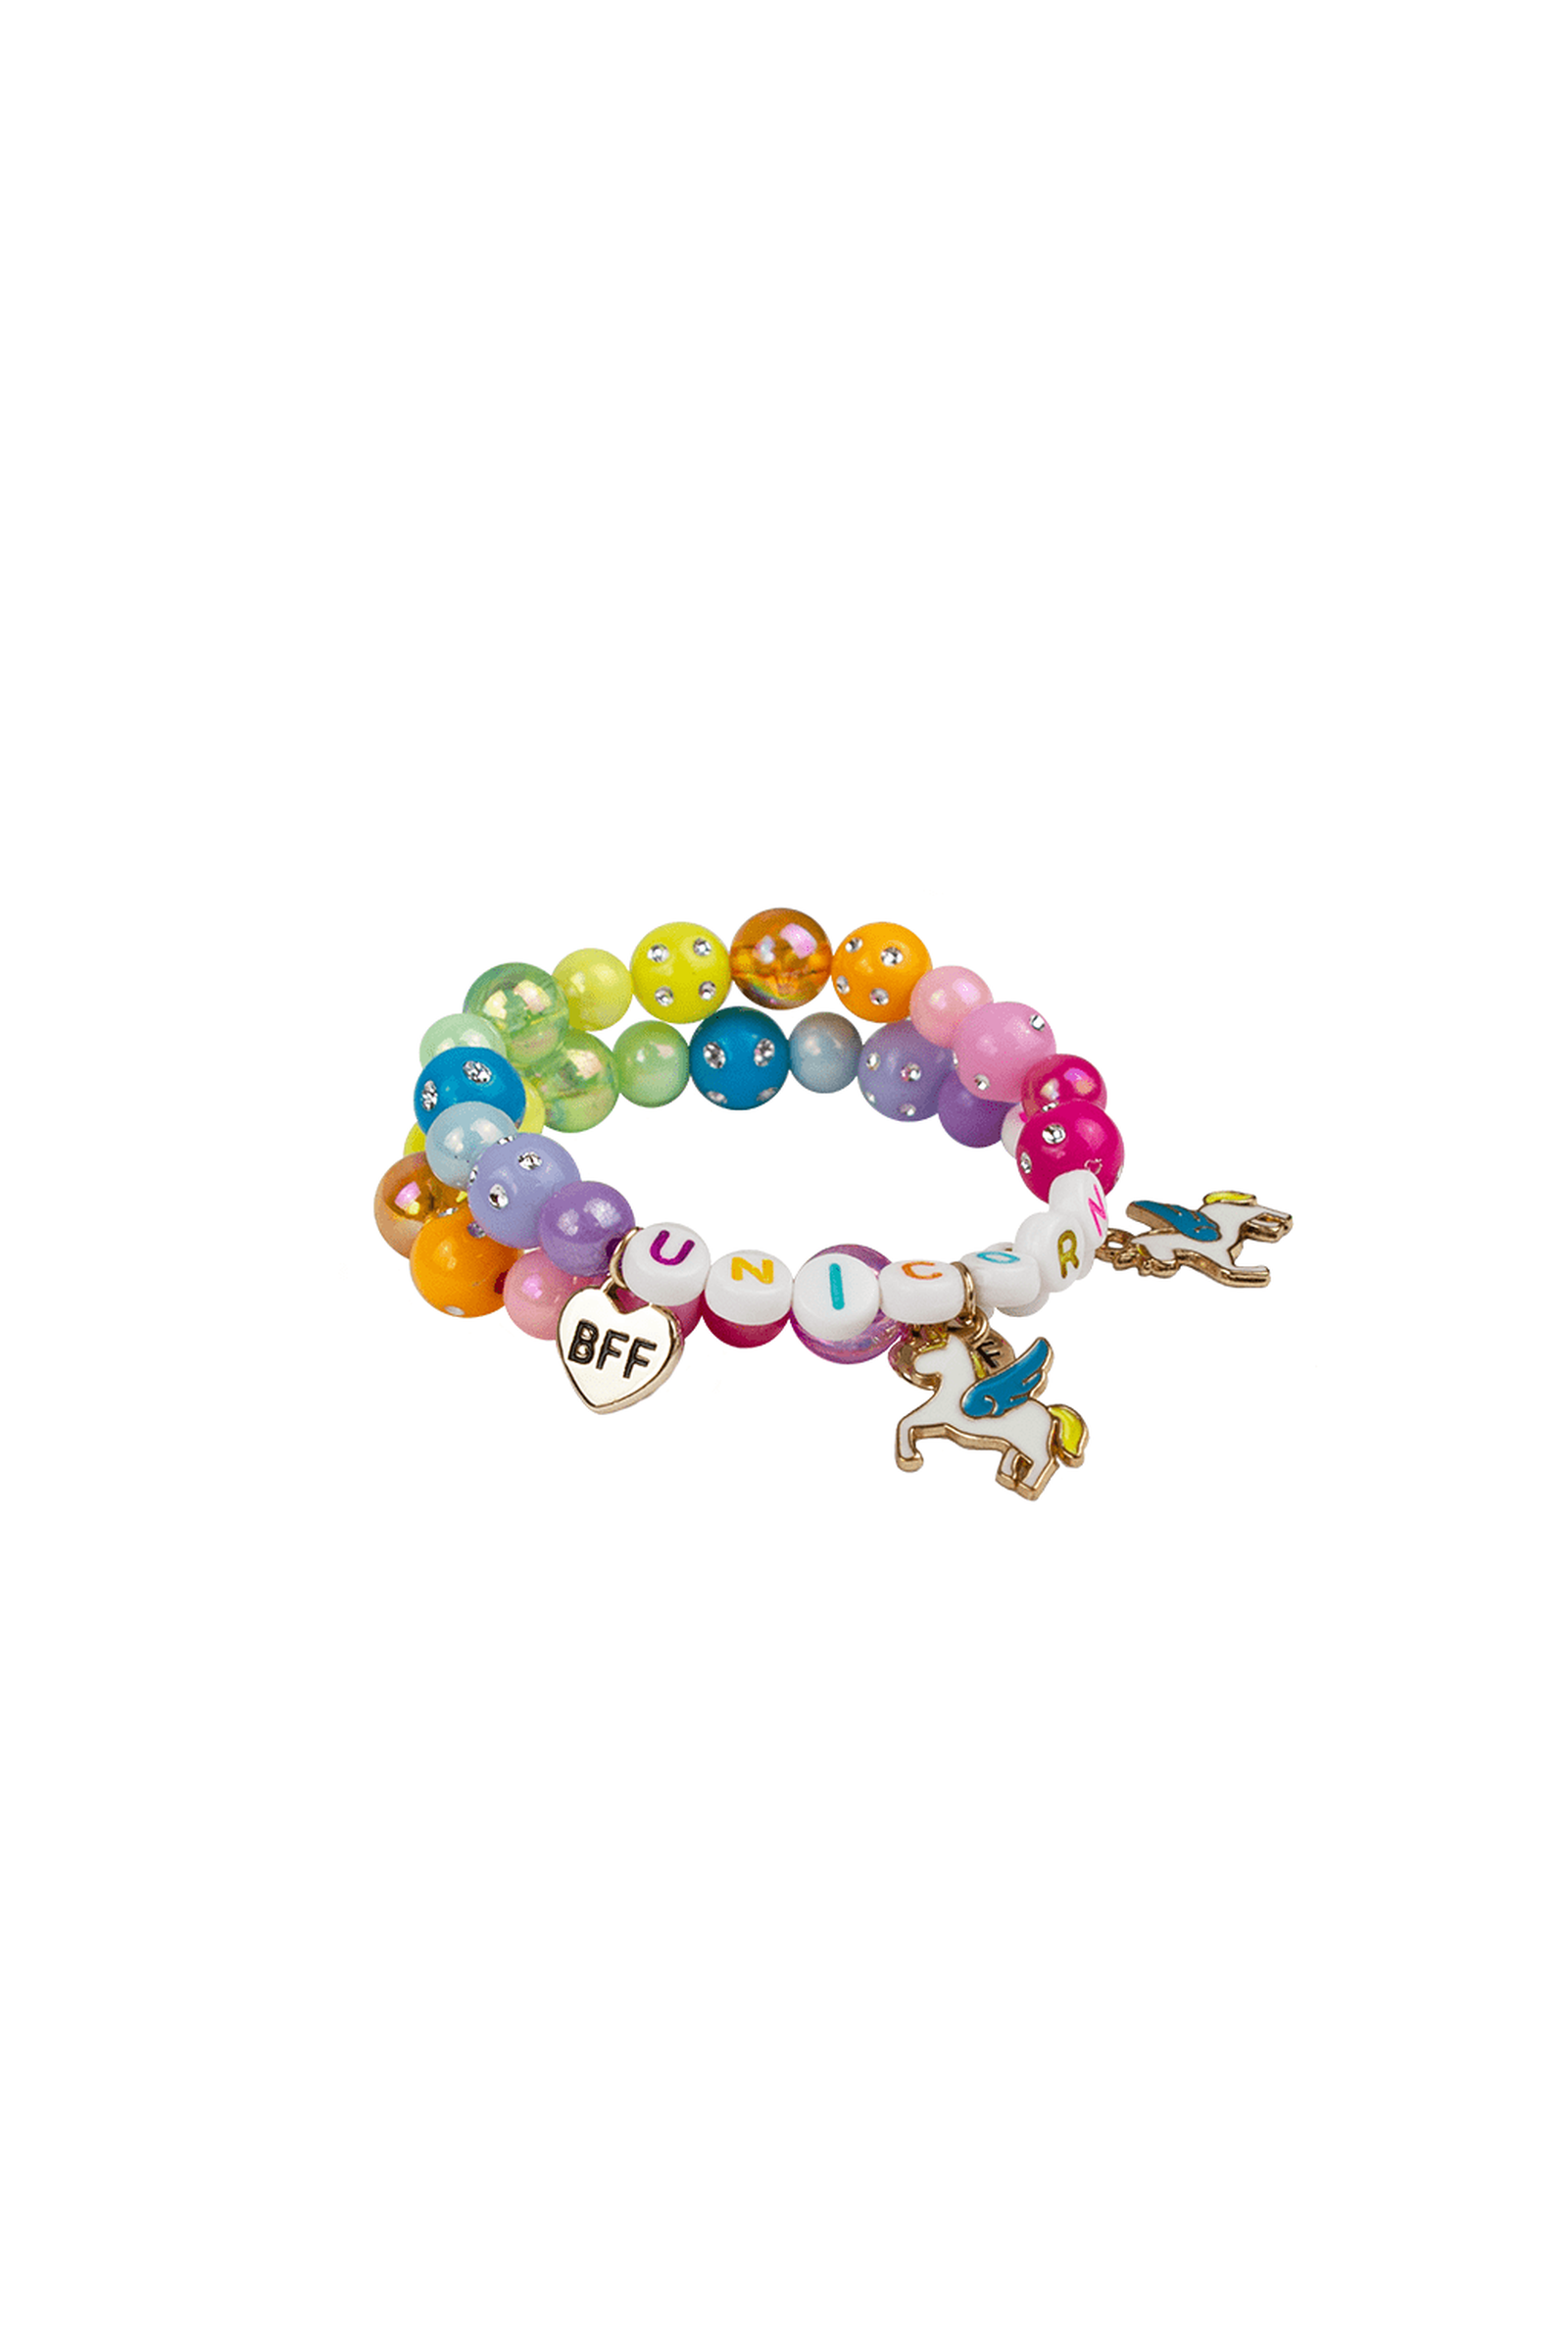 9 Pieces Colorful Unicorn Bracelet Girls Unicorn Bracelets Rainbow Unicorn  Beaded Bracelet For Birthday Party Favors